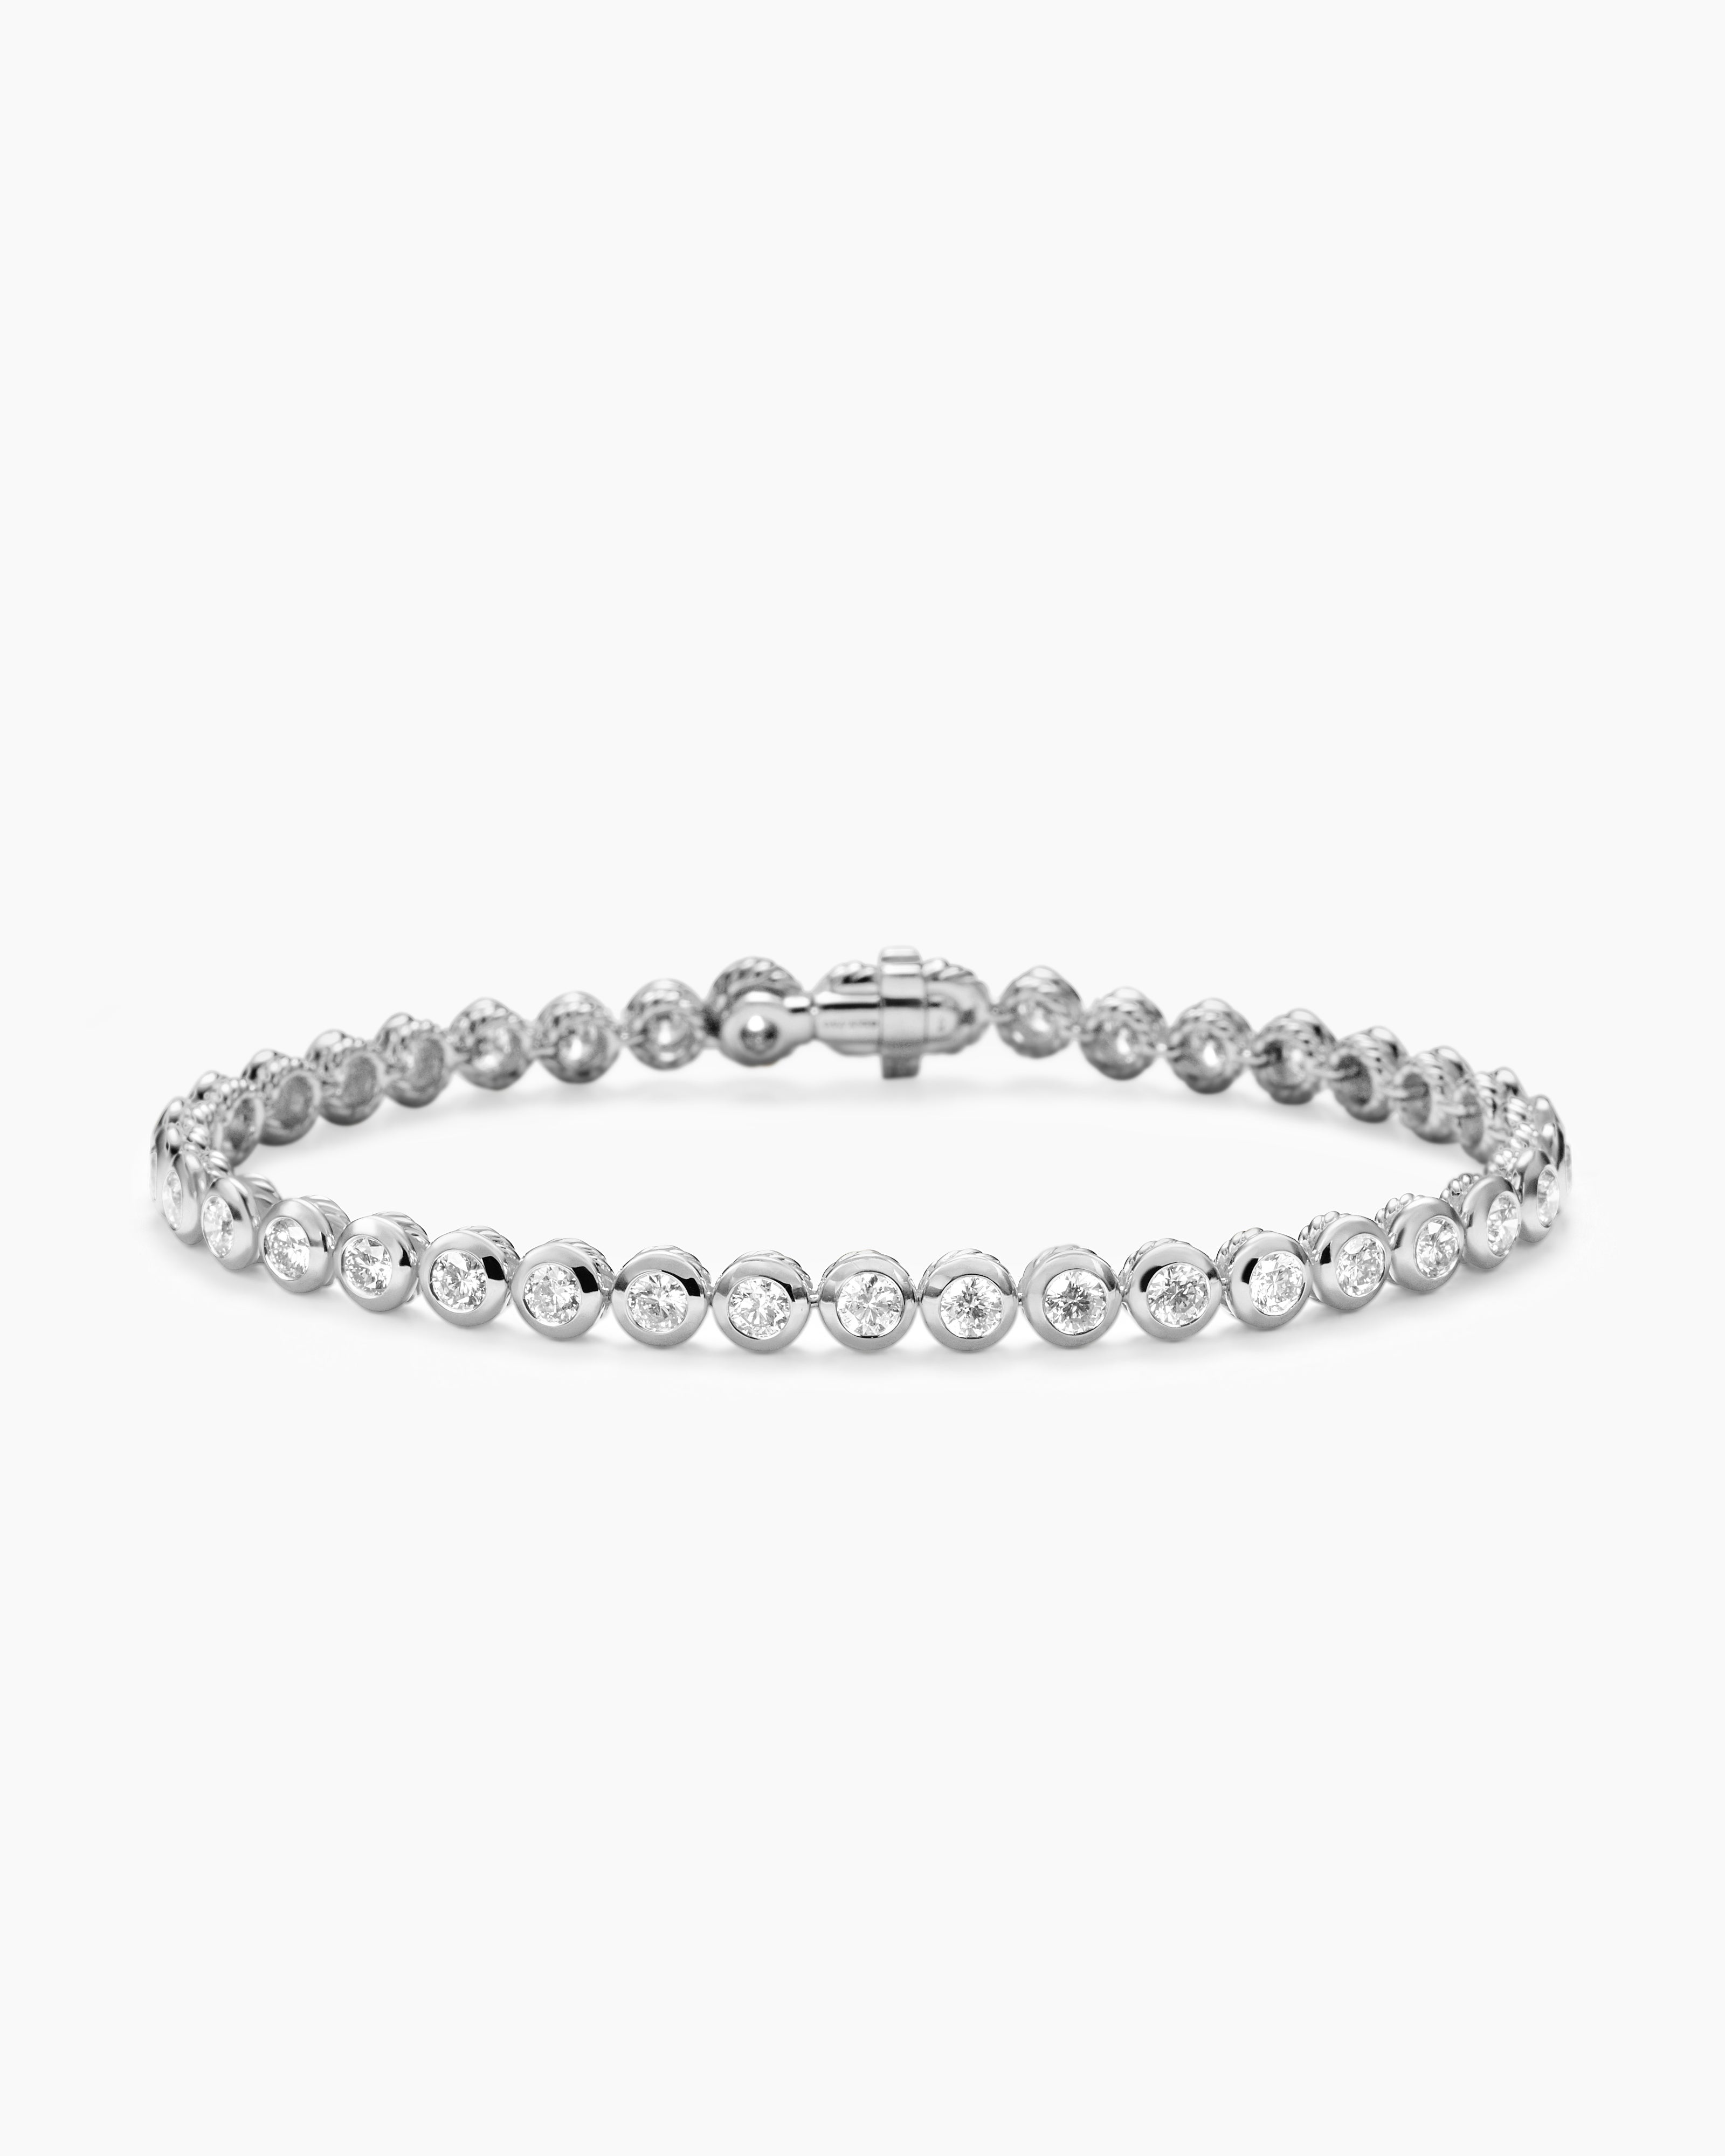 7 Carat Diamond Tennis Bracelet | Barkev's